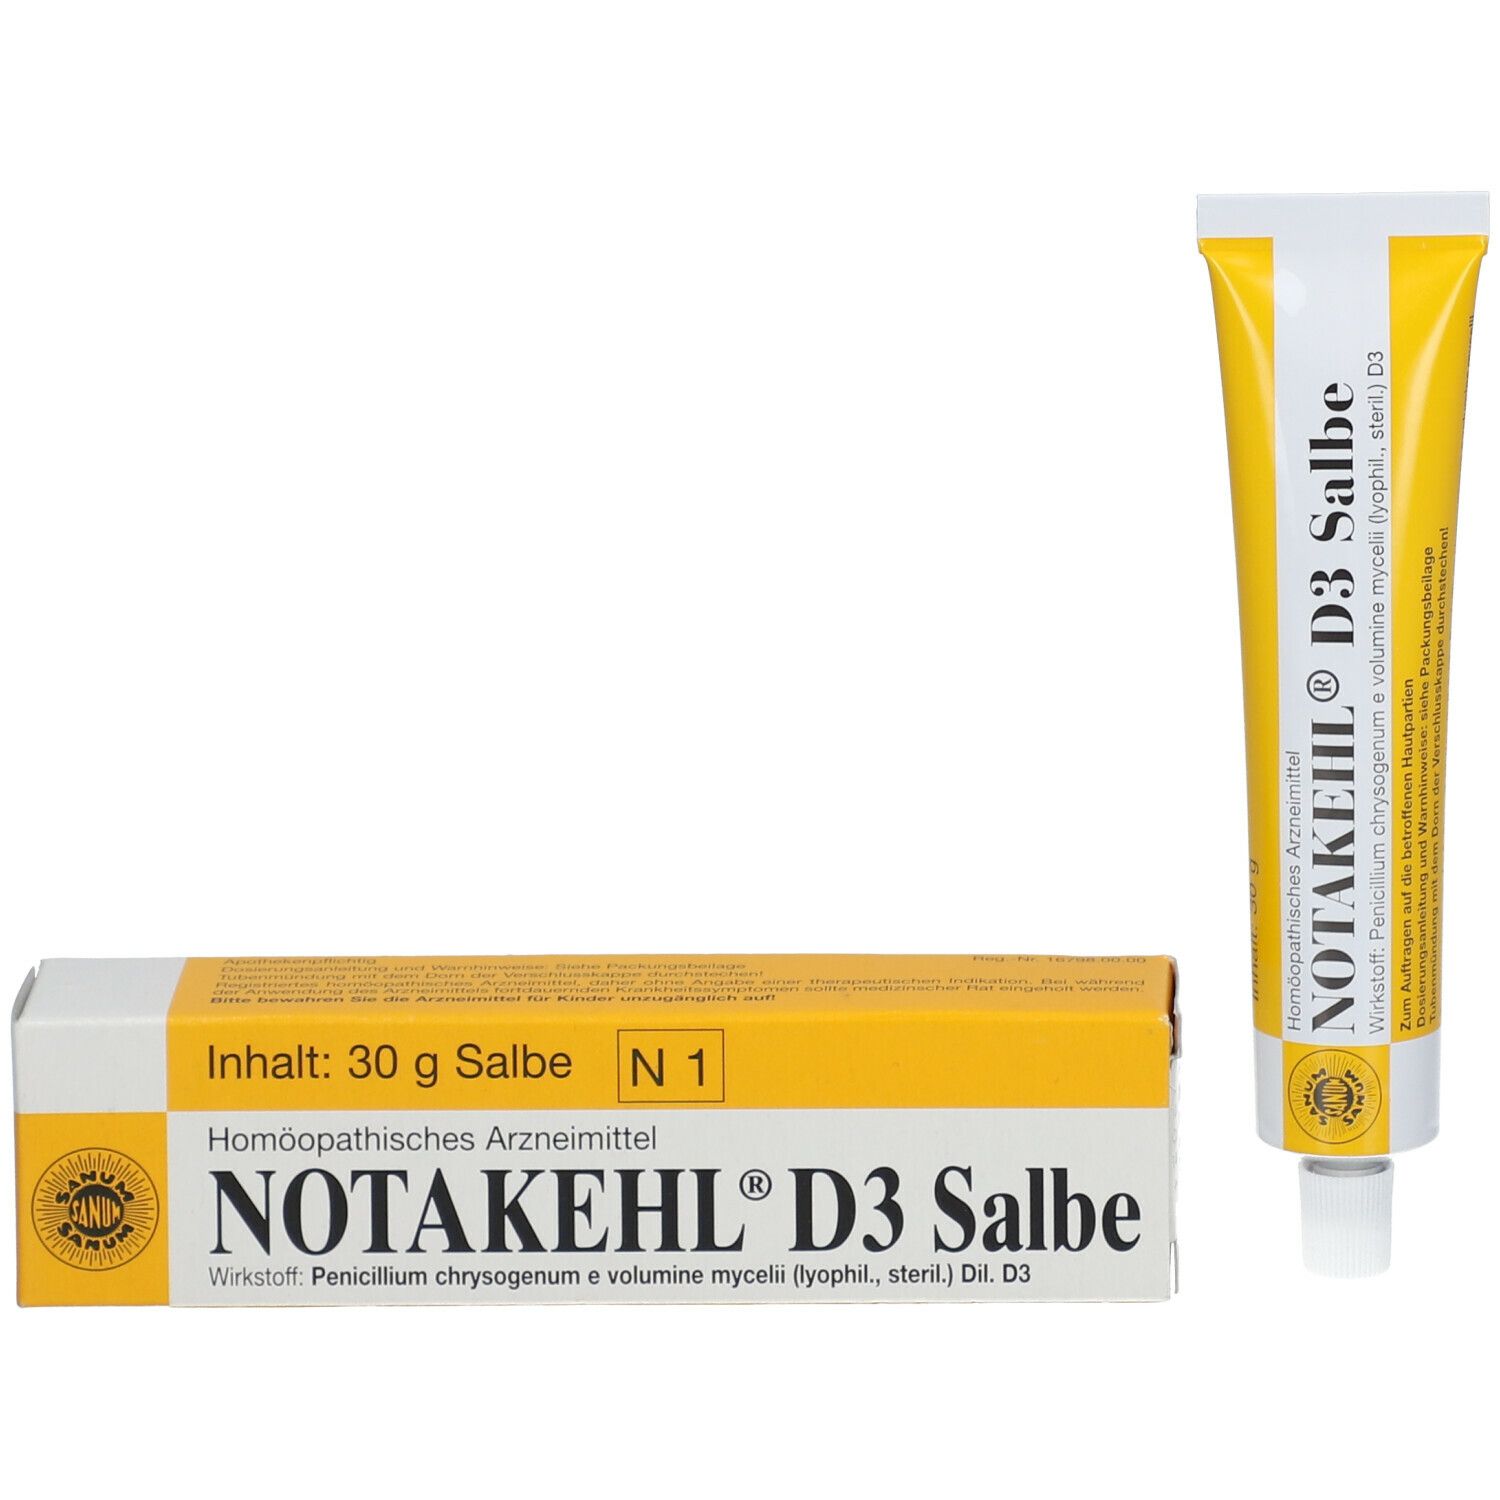 Notakehl® D3 Salbe